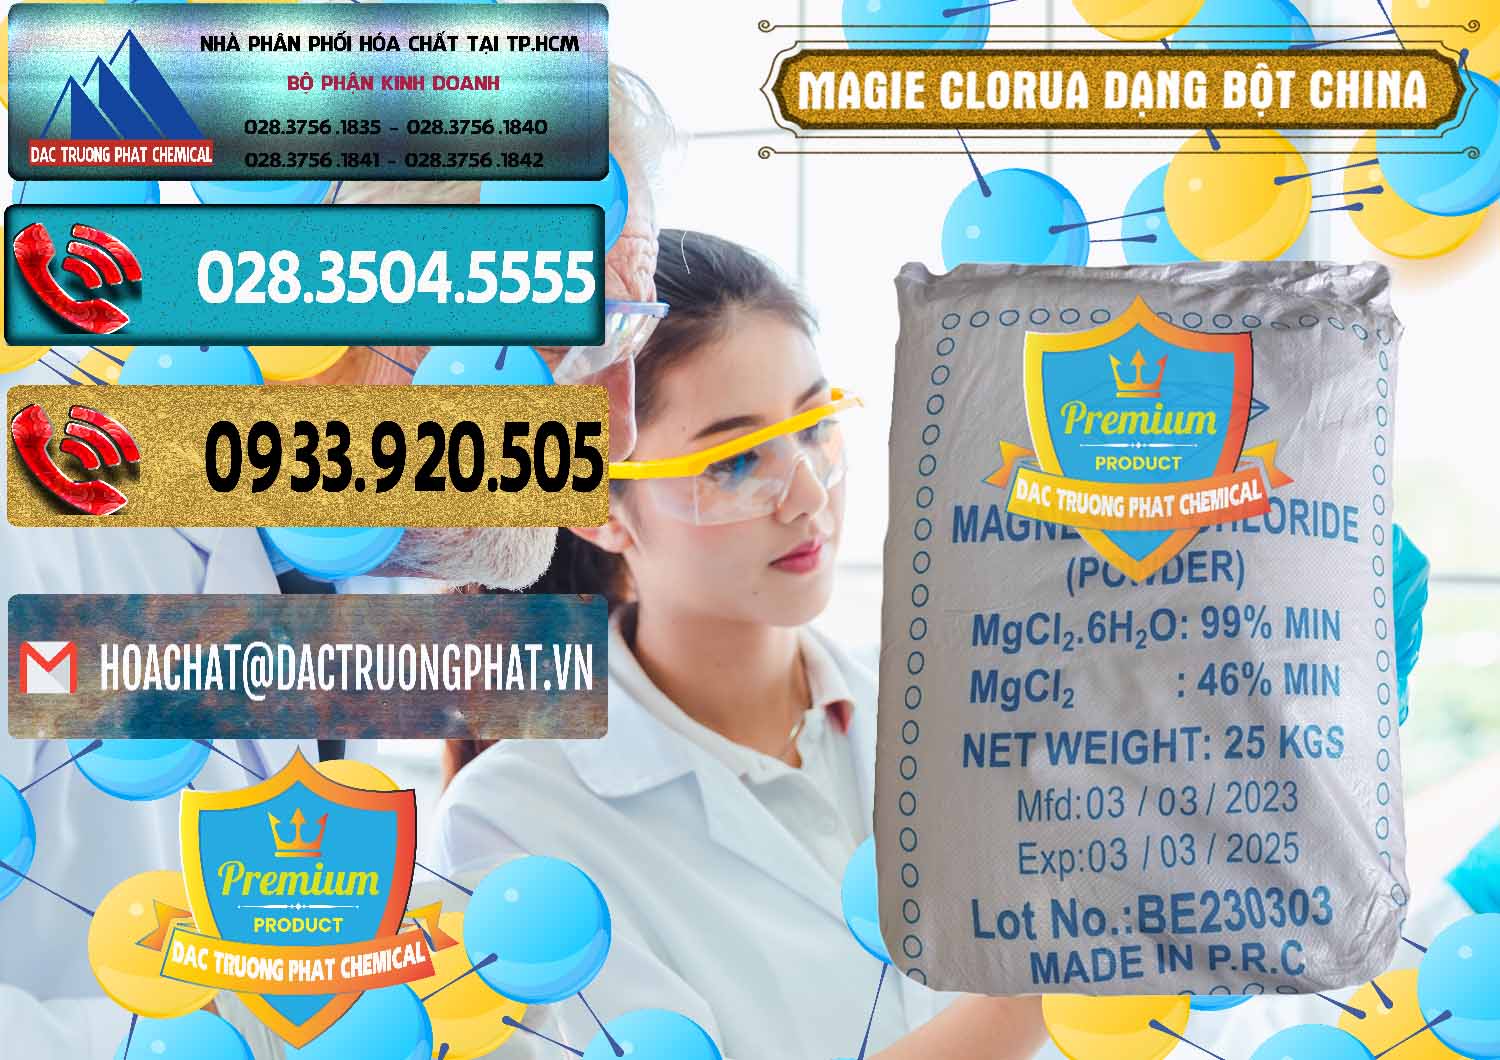 Nơi chuyên bán - cung ứng Magie Clorua – MGCL2 96% Dạng Bột Logo Kim Cương Trung Quốc China - 0387 - Nhà cung cấp _ phân phối hóa chất tại TP.HCM - hoachatdetnhuom.com